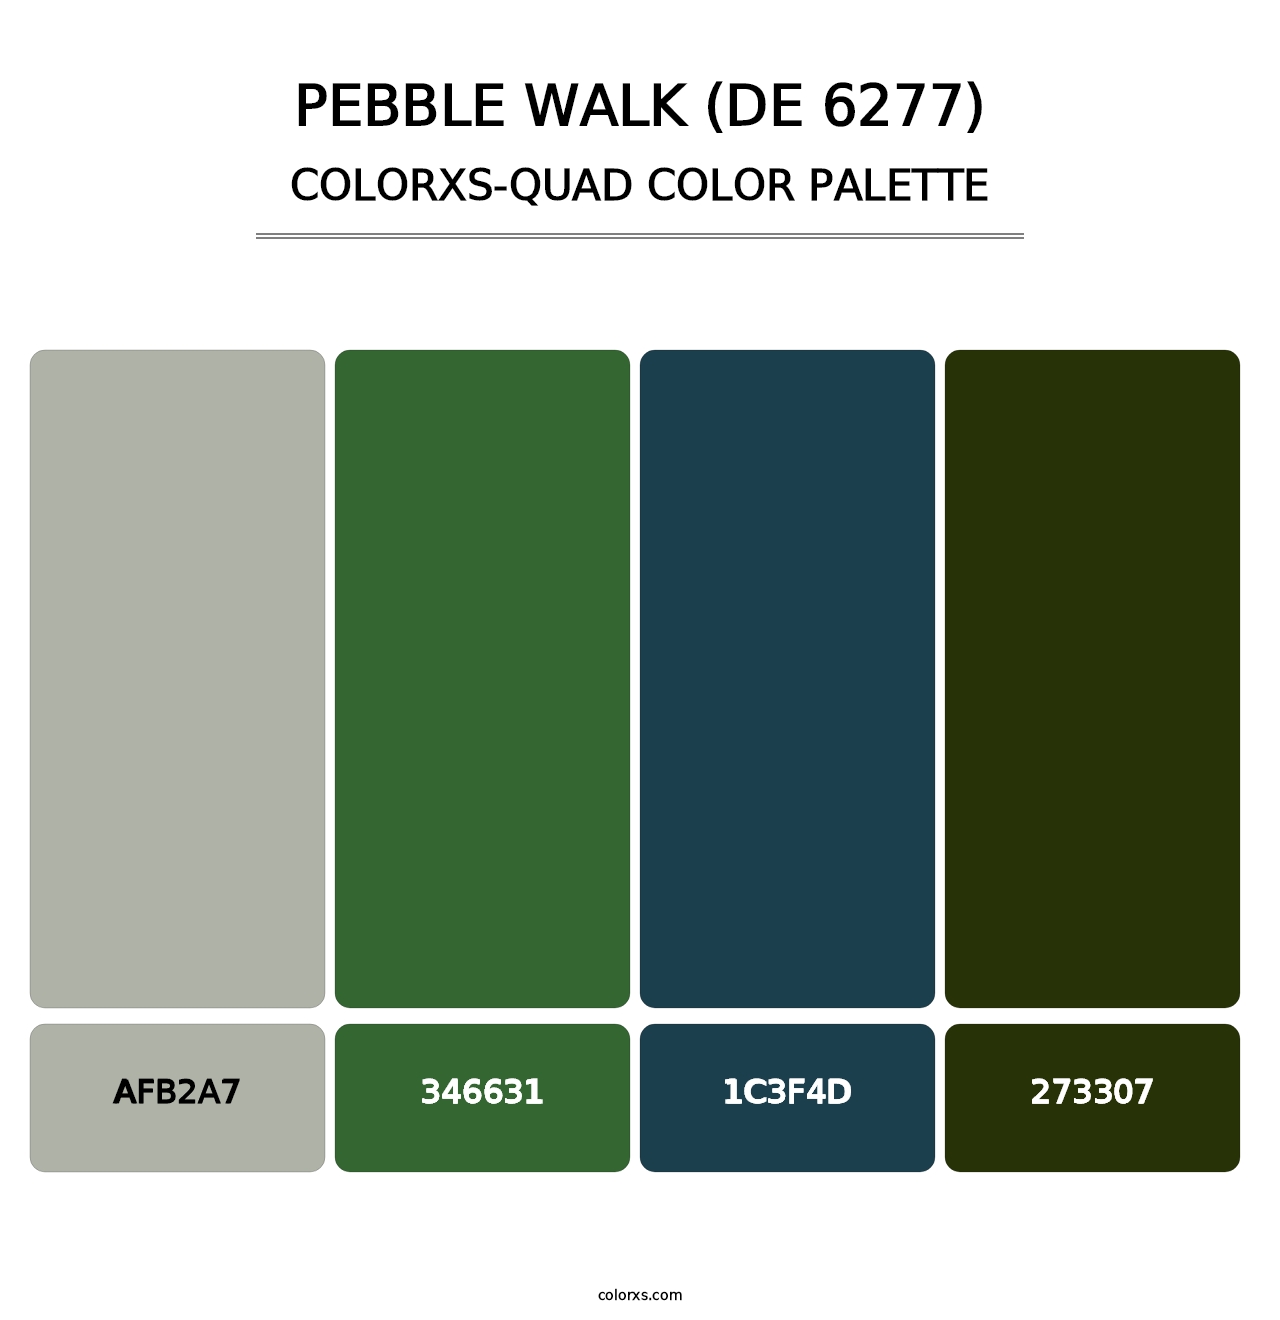 Pebble Walk (DE 6277) - Colorxs Quad Palette